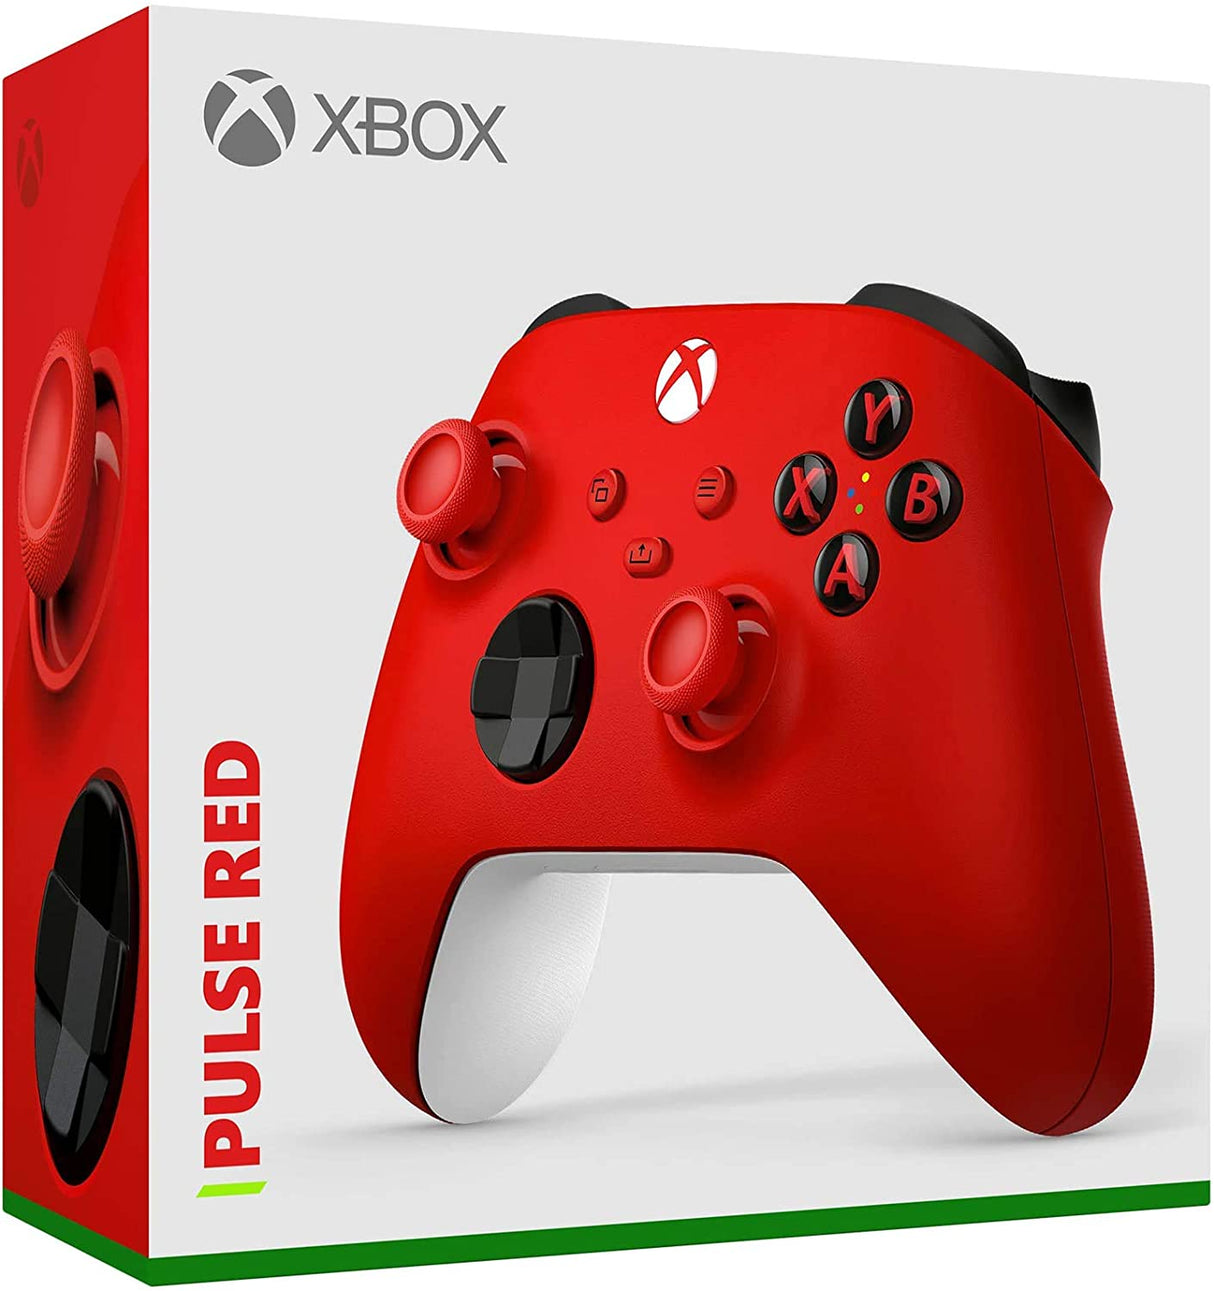 Xbox Core Controller series S|X - Pulse Red - Level UpMicrosoftXbox Accessories8.90E+11